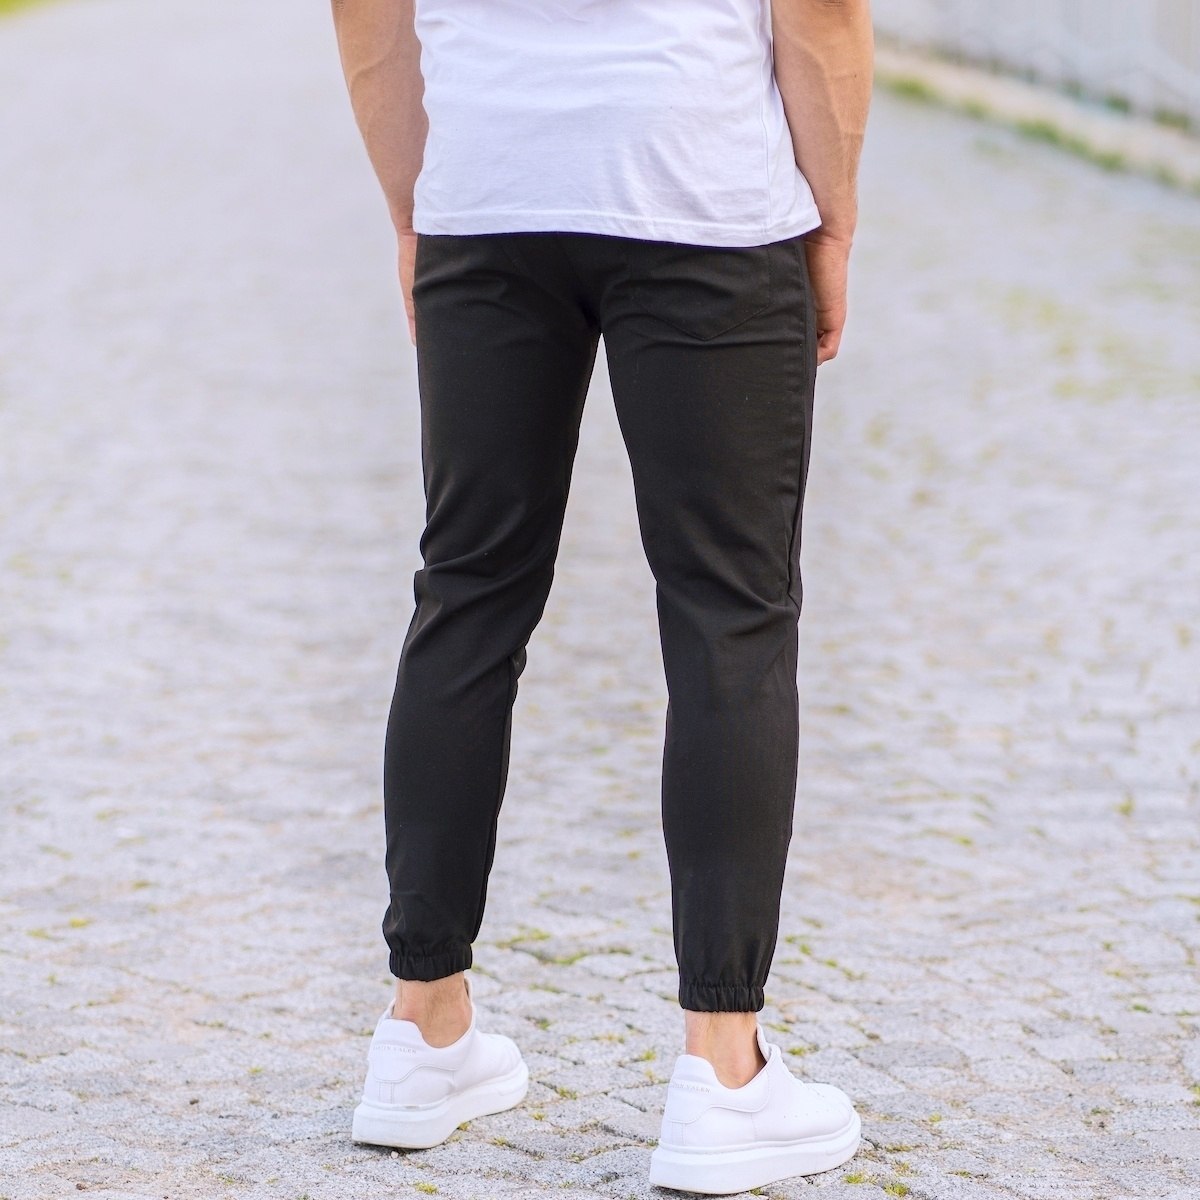 Herren Slim-Fit elastische Lycra Sporthose in schwarz - 4